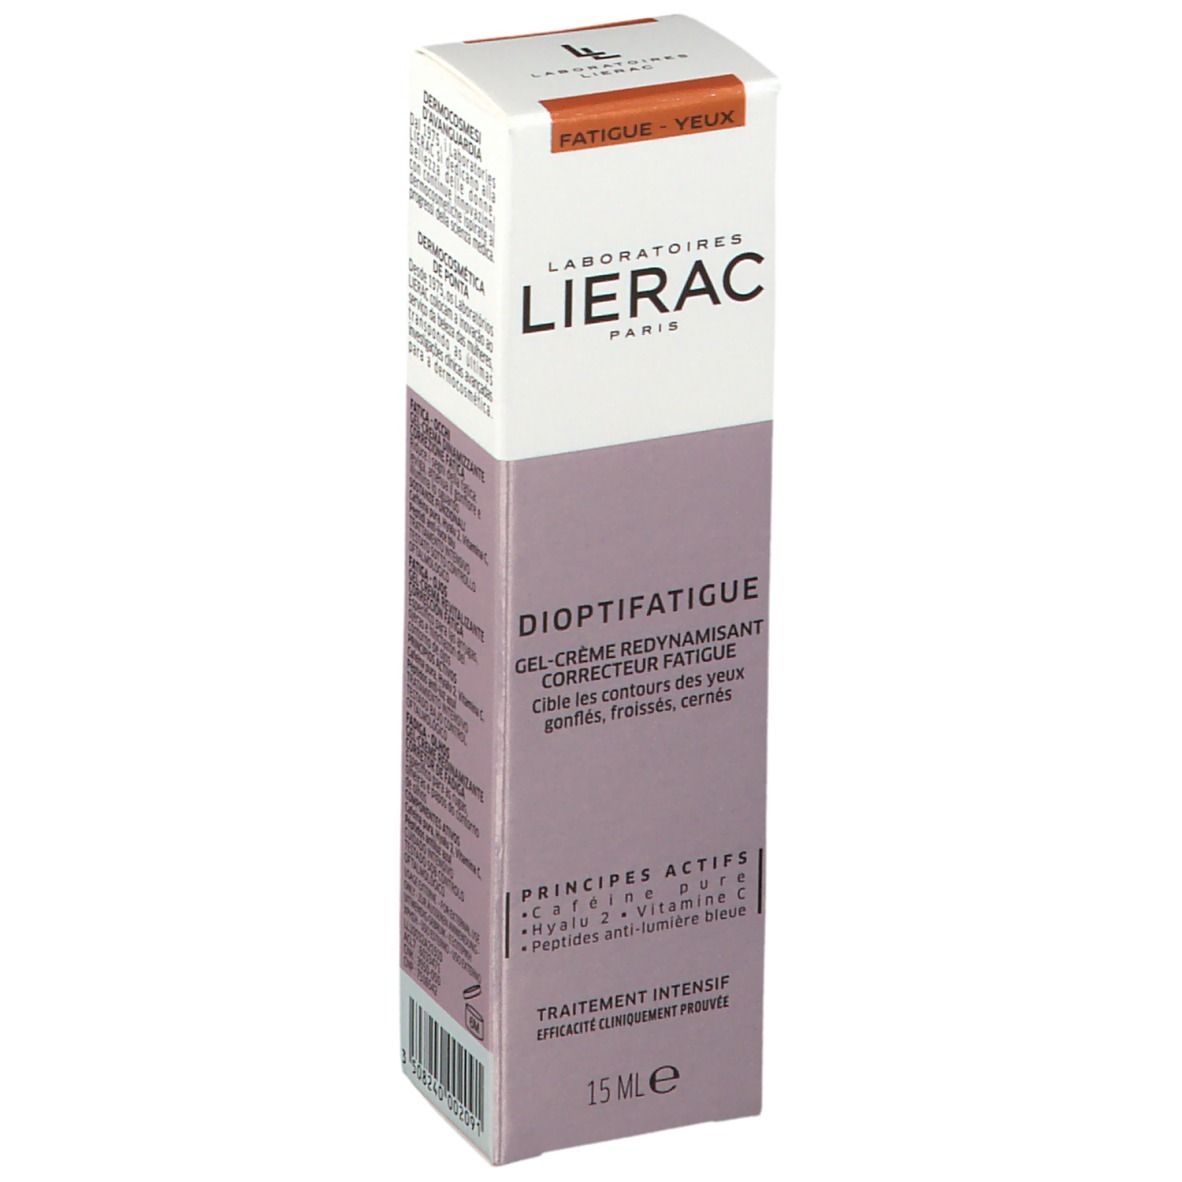 Image of LIERAC Dioptifatigue Gel-Creme